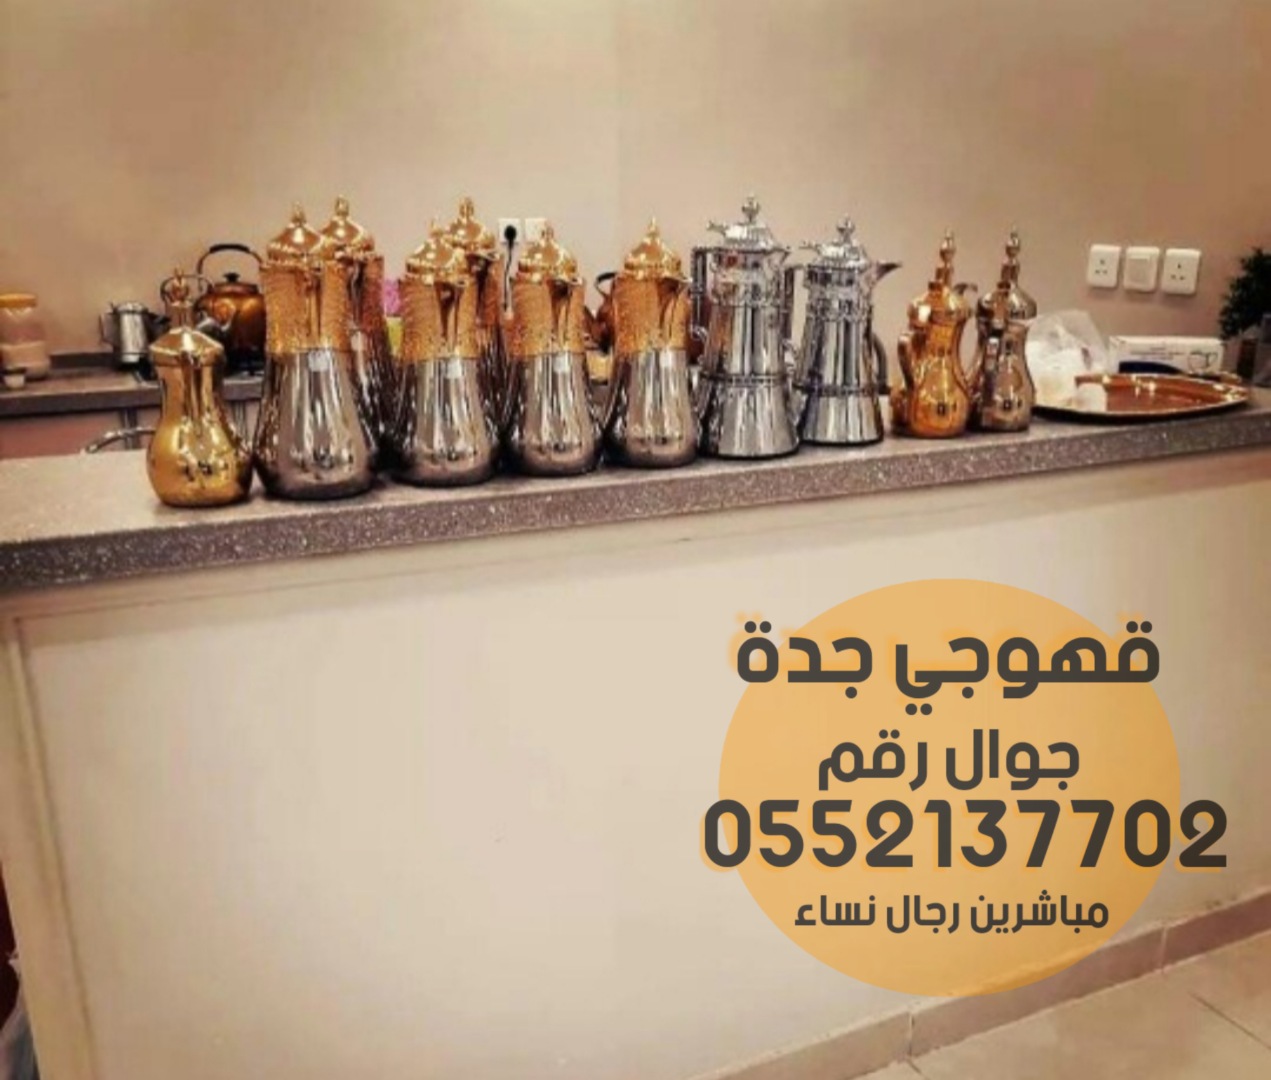 قهوجيين قهوجي وصبابين قهوة في جدة 0552137702